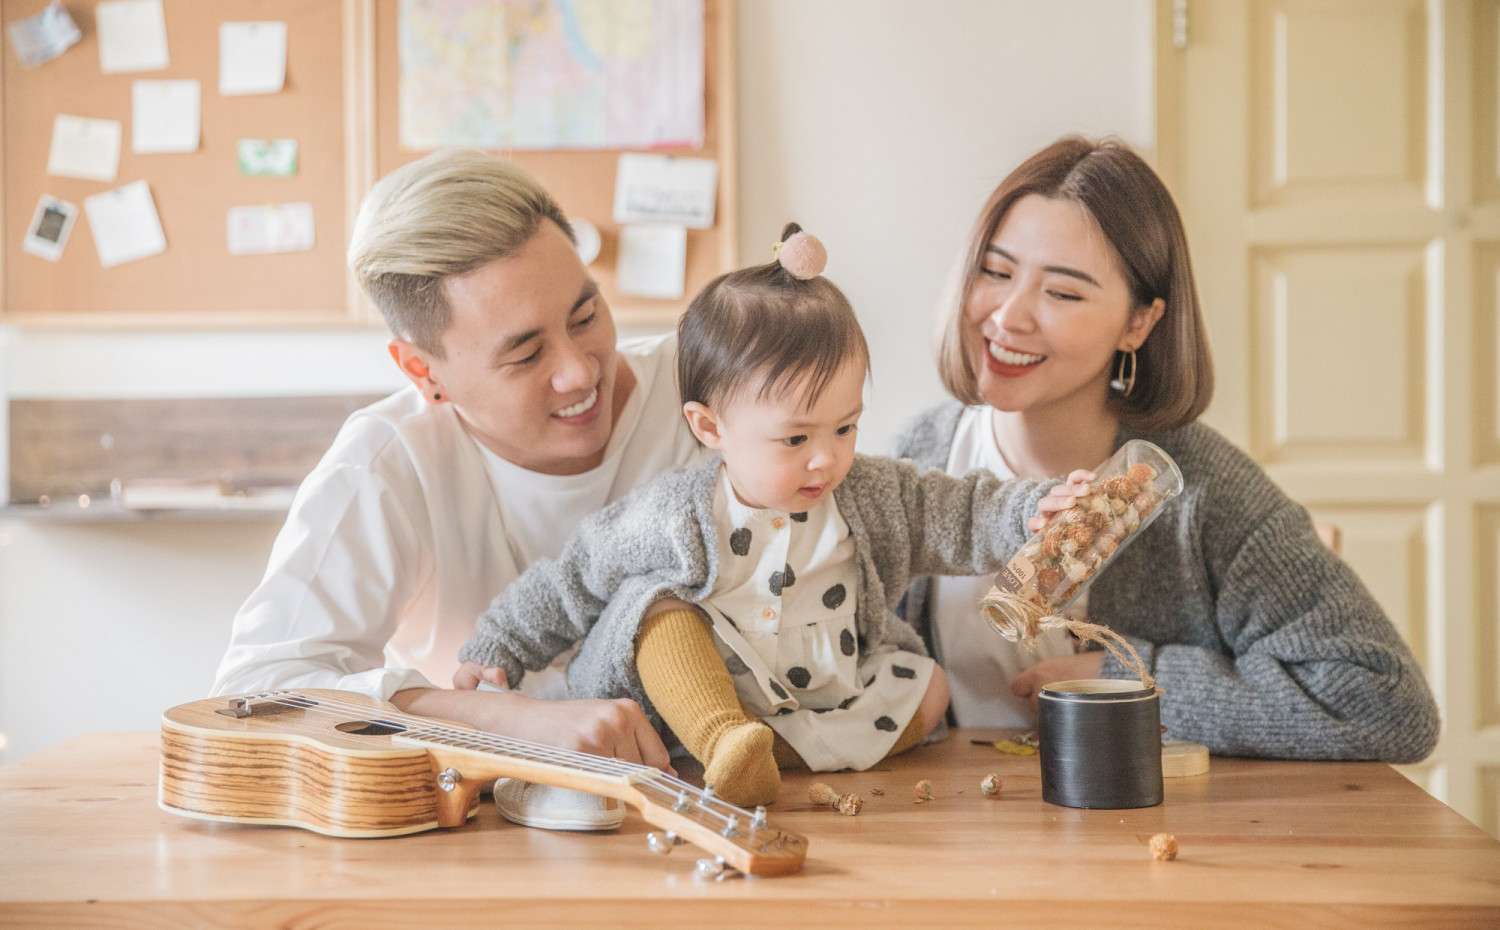 Thế nào là một gia đình hạnh phúc, một gia đình hạnh phúc cần những gì? –  Vera Hà Anh - Tiến sỹ tâm lý, Trưởng bộ môn tâm lý tình yêu